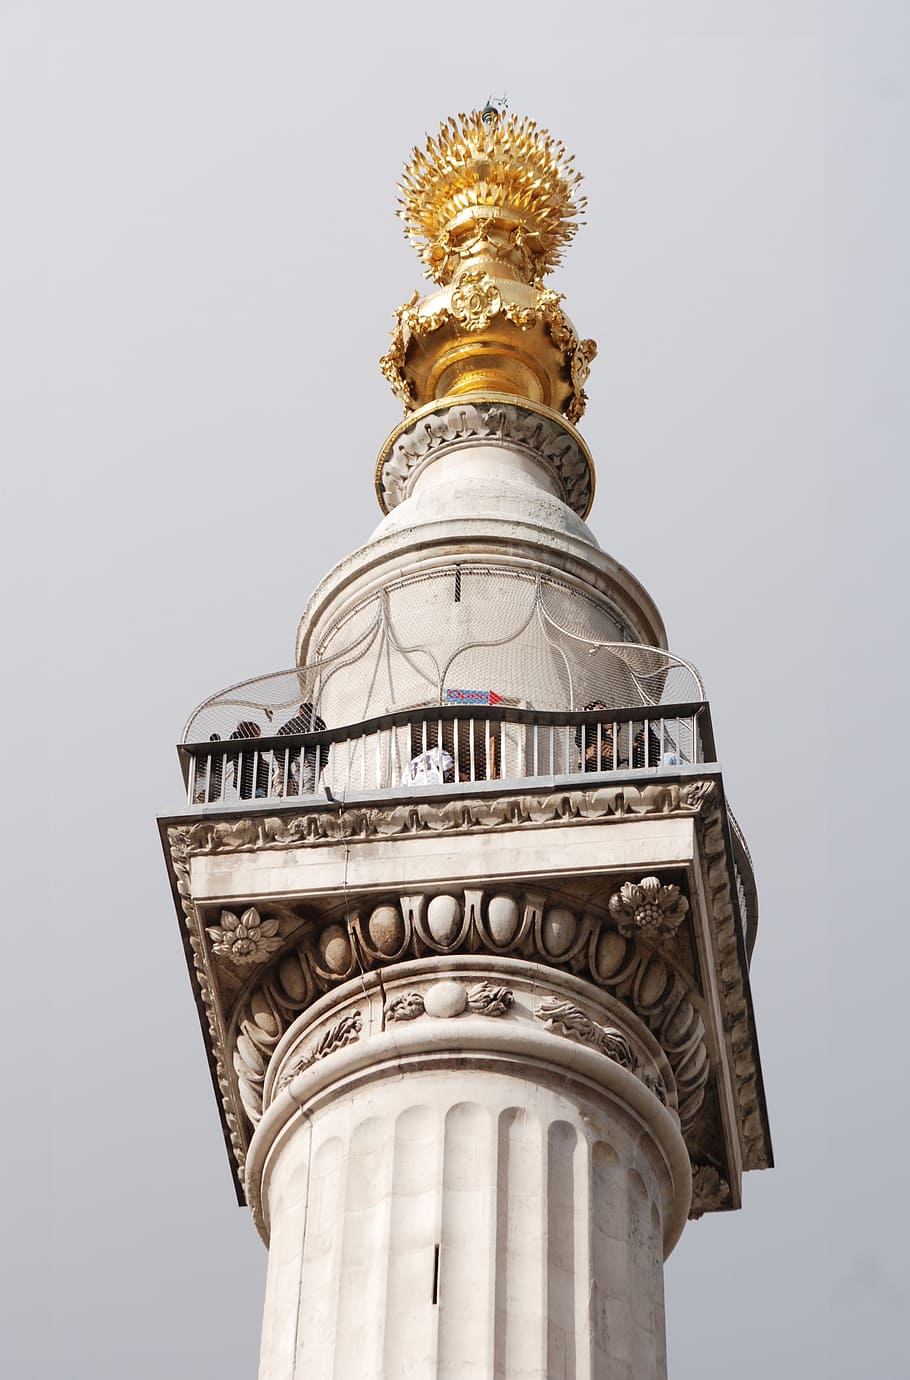 Monumento, Grande, Fogo, Londres, Coluna Dórica, Dourado, Estátua, Arquitetura, Ouro, Exterior do edifício